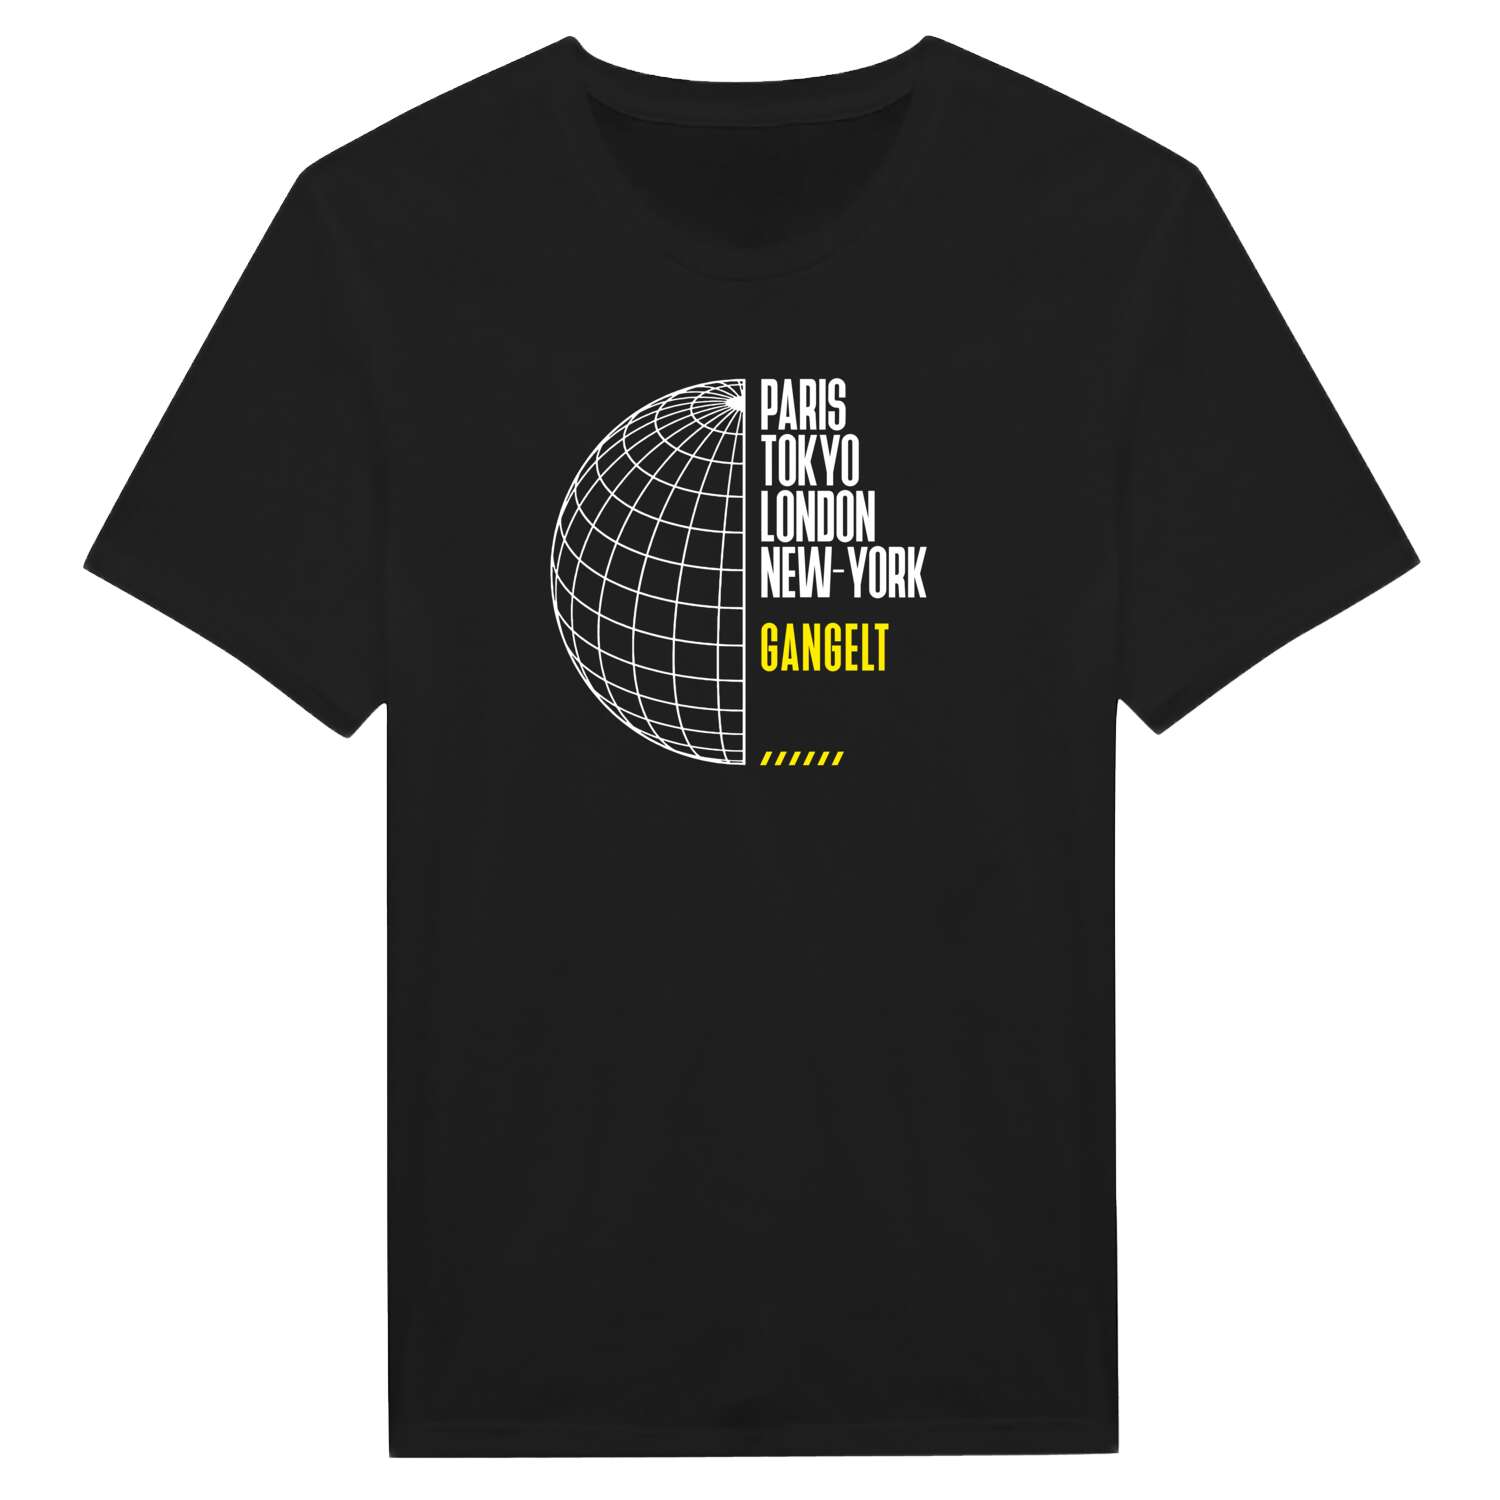 Gangelt T-Shirt »Paris Tokyo London«